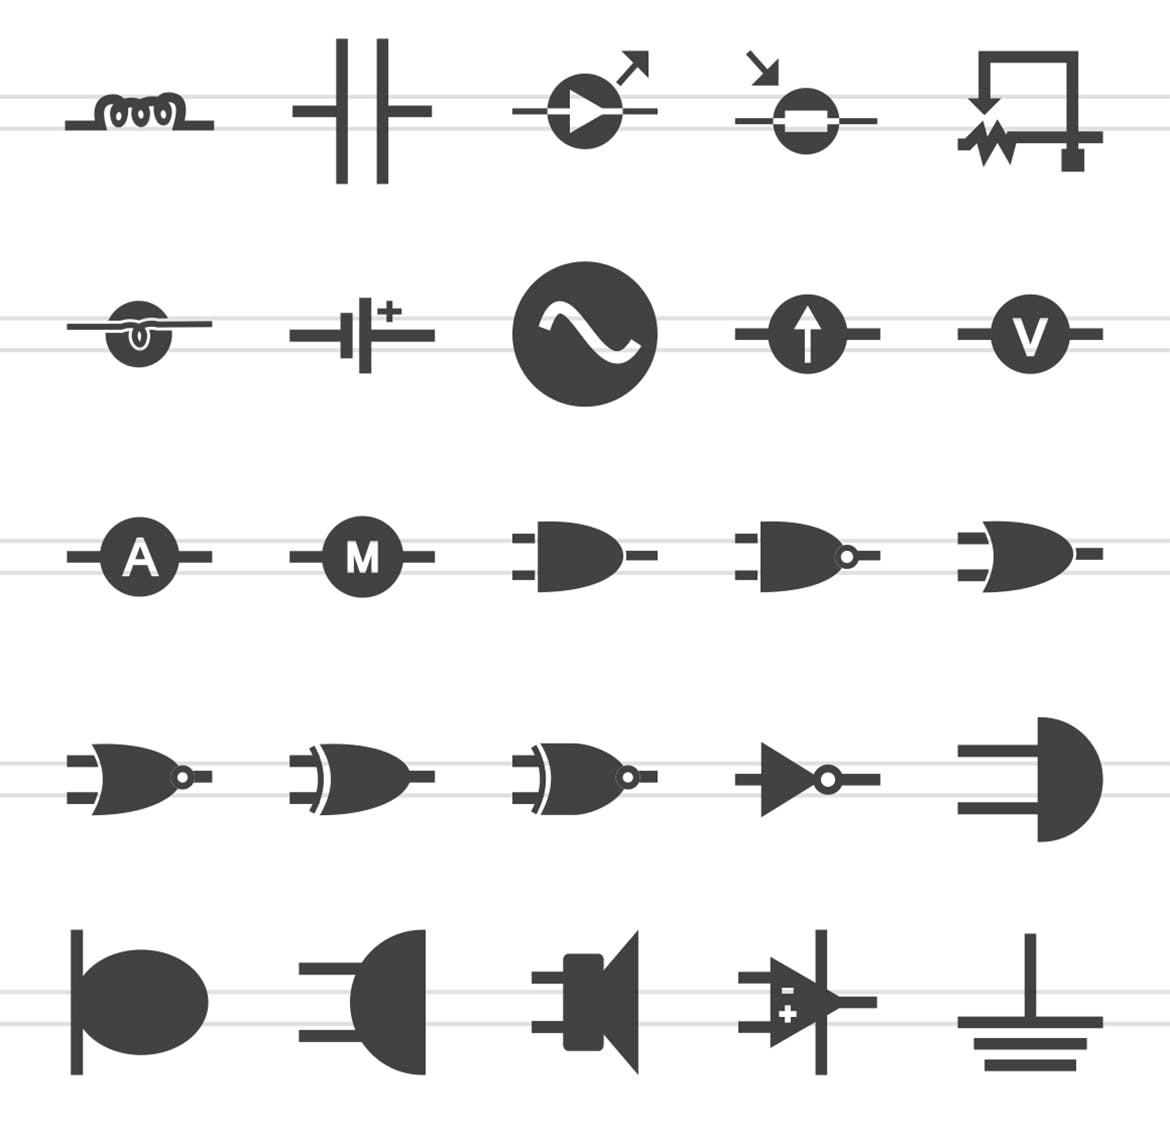 50枚电路线路板主题黑色字体非凡图库精选图标 50 Electric Circuits Glyph Icons插图(2)